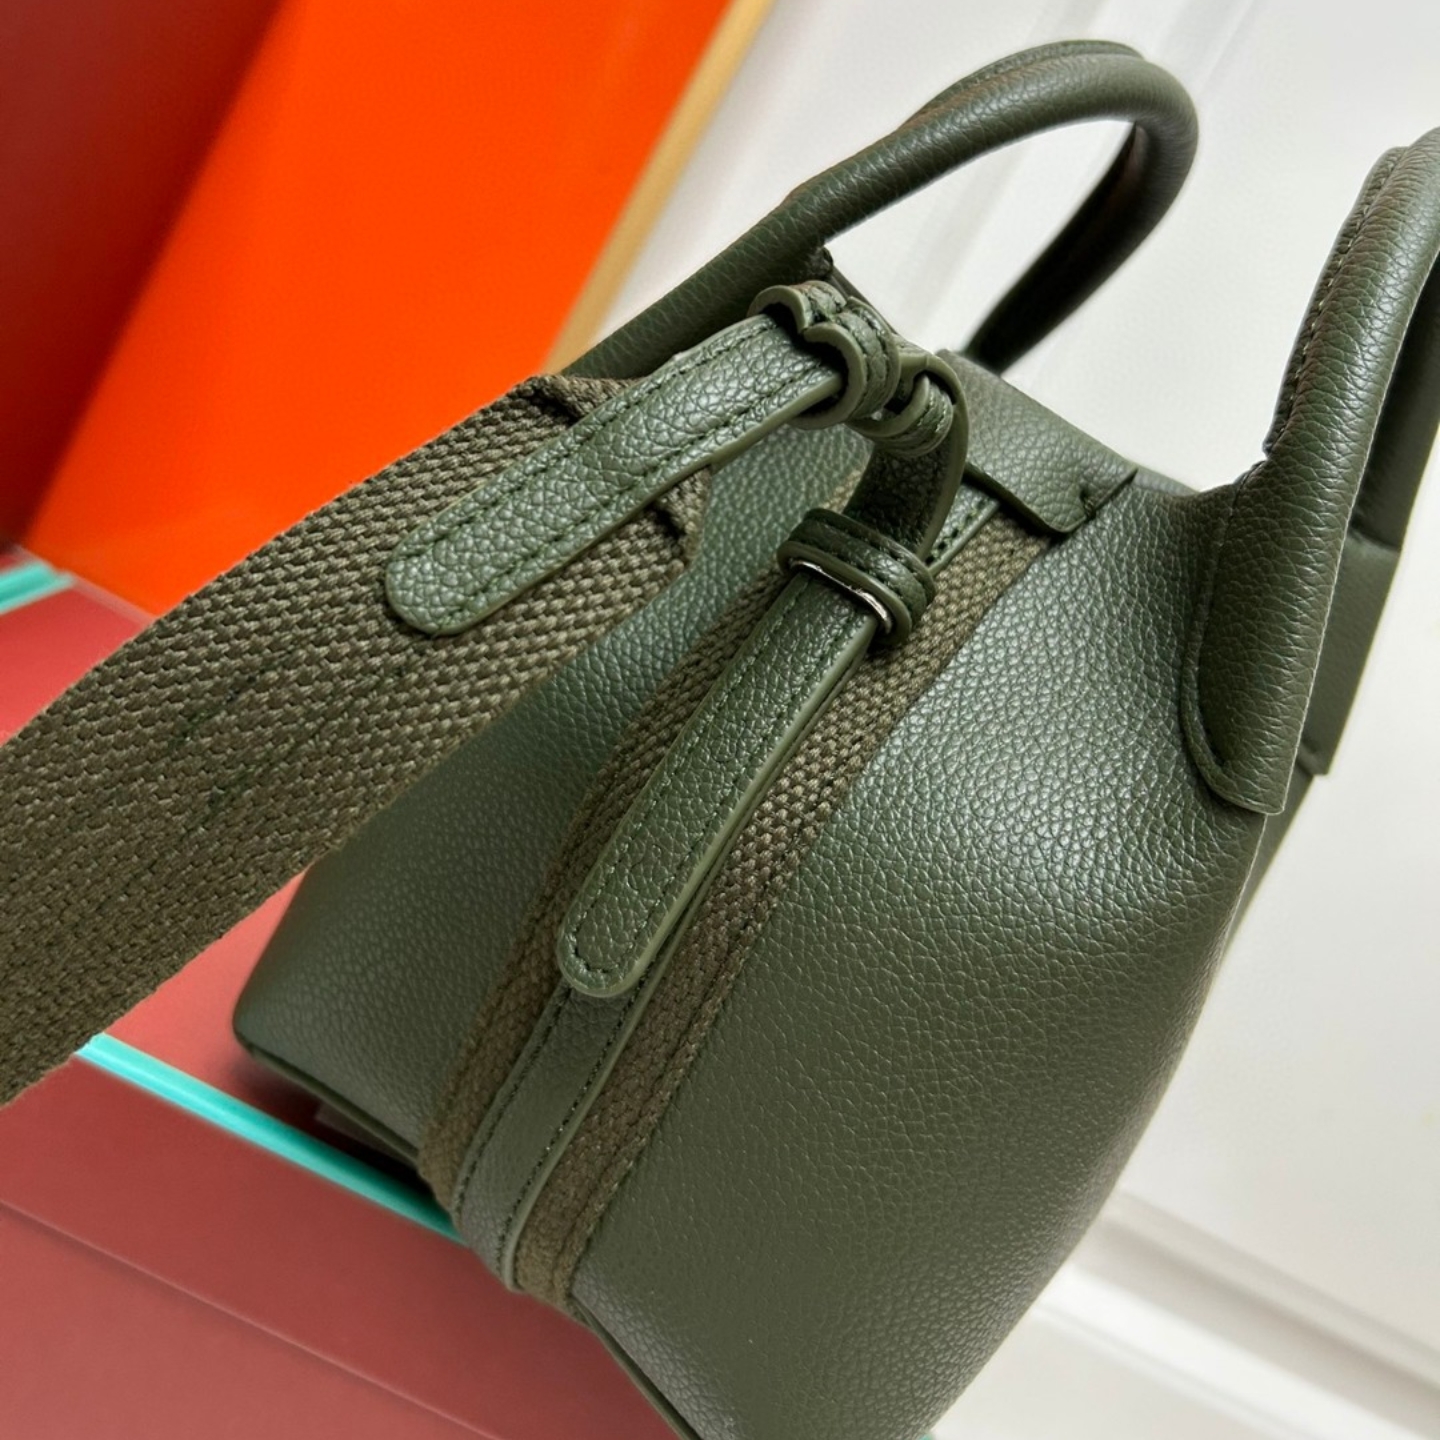 P170-6 Высококачественный рюкзак с новой сумочкой для сумок с ковшом может быть с плечами до спины, портативной, модной, ежедневной одежды необходимого размера 16x14x14 см.